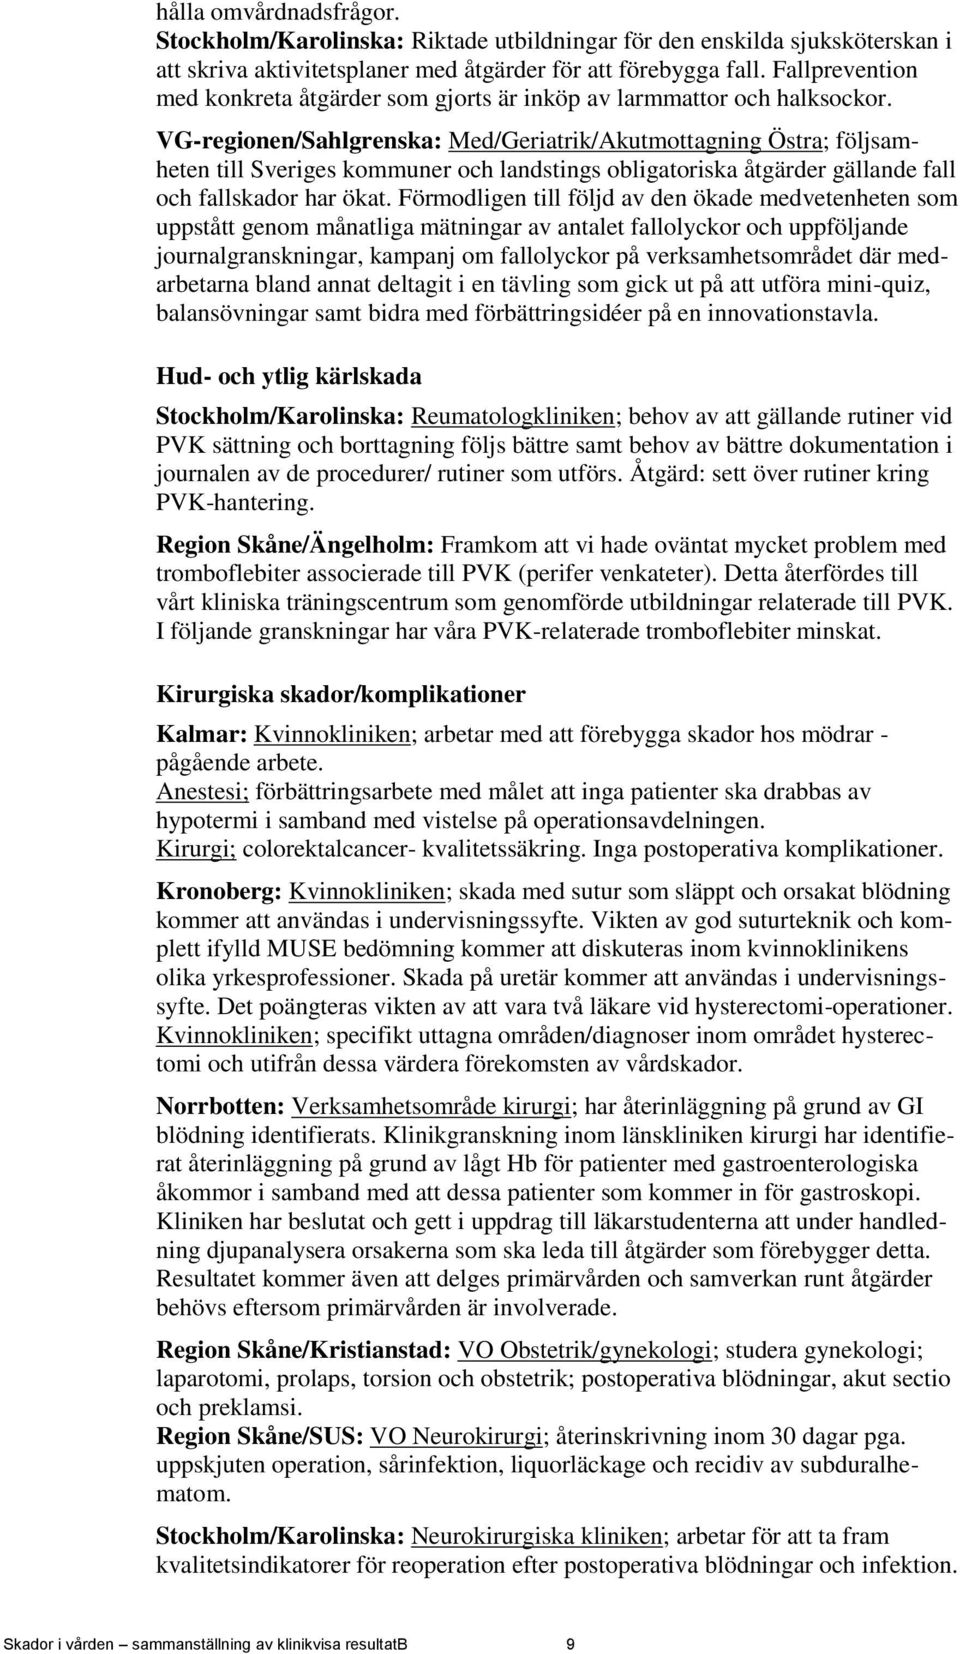 VG-regionen/Sahlgrenska: Med/Geriatrik/Akutmottagning Östra; följsamheten till Sveriges kommuner och landstings obligatoriska åtgärder gällande fall och fallskador har ökat.